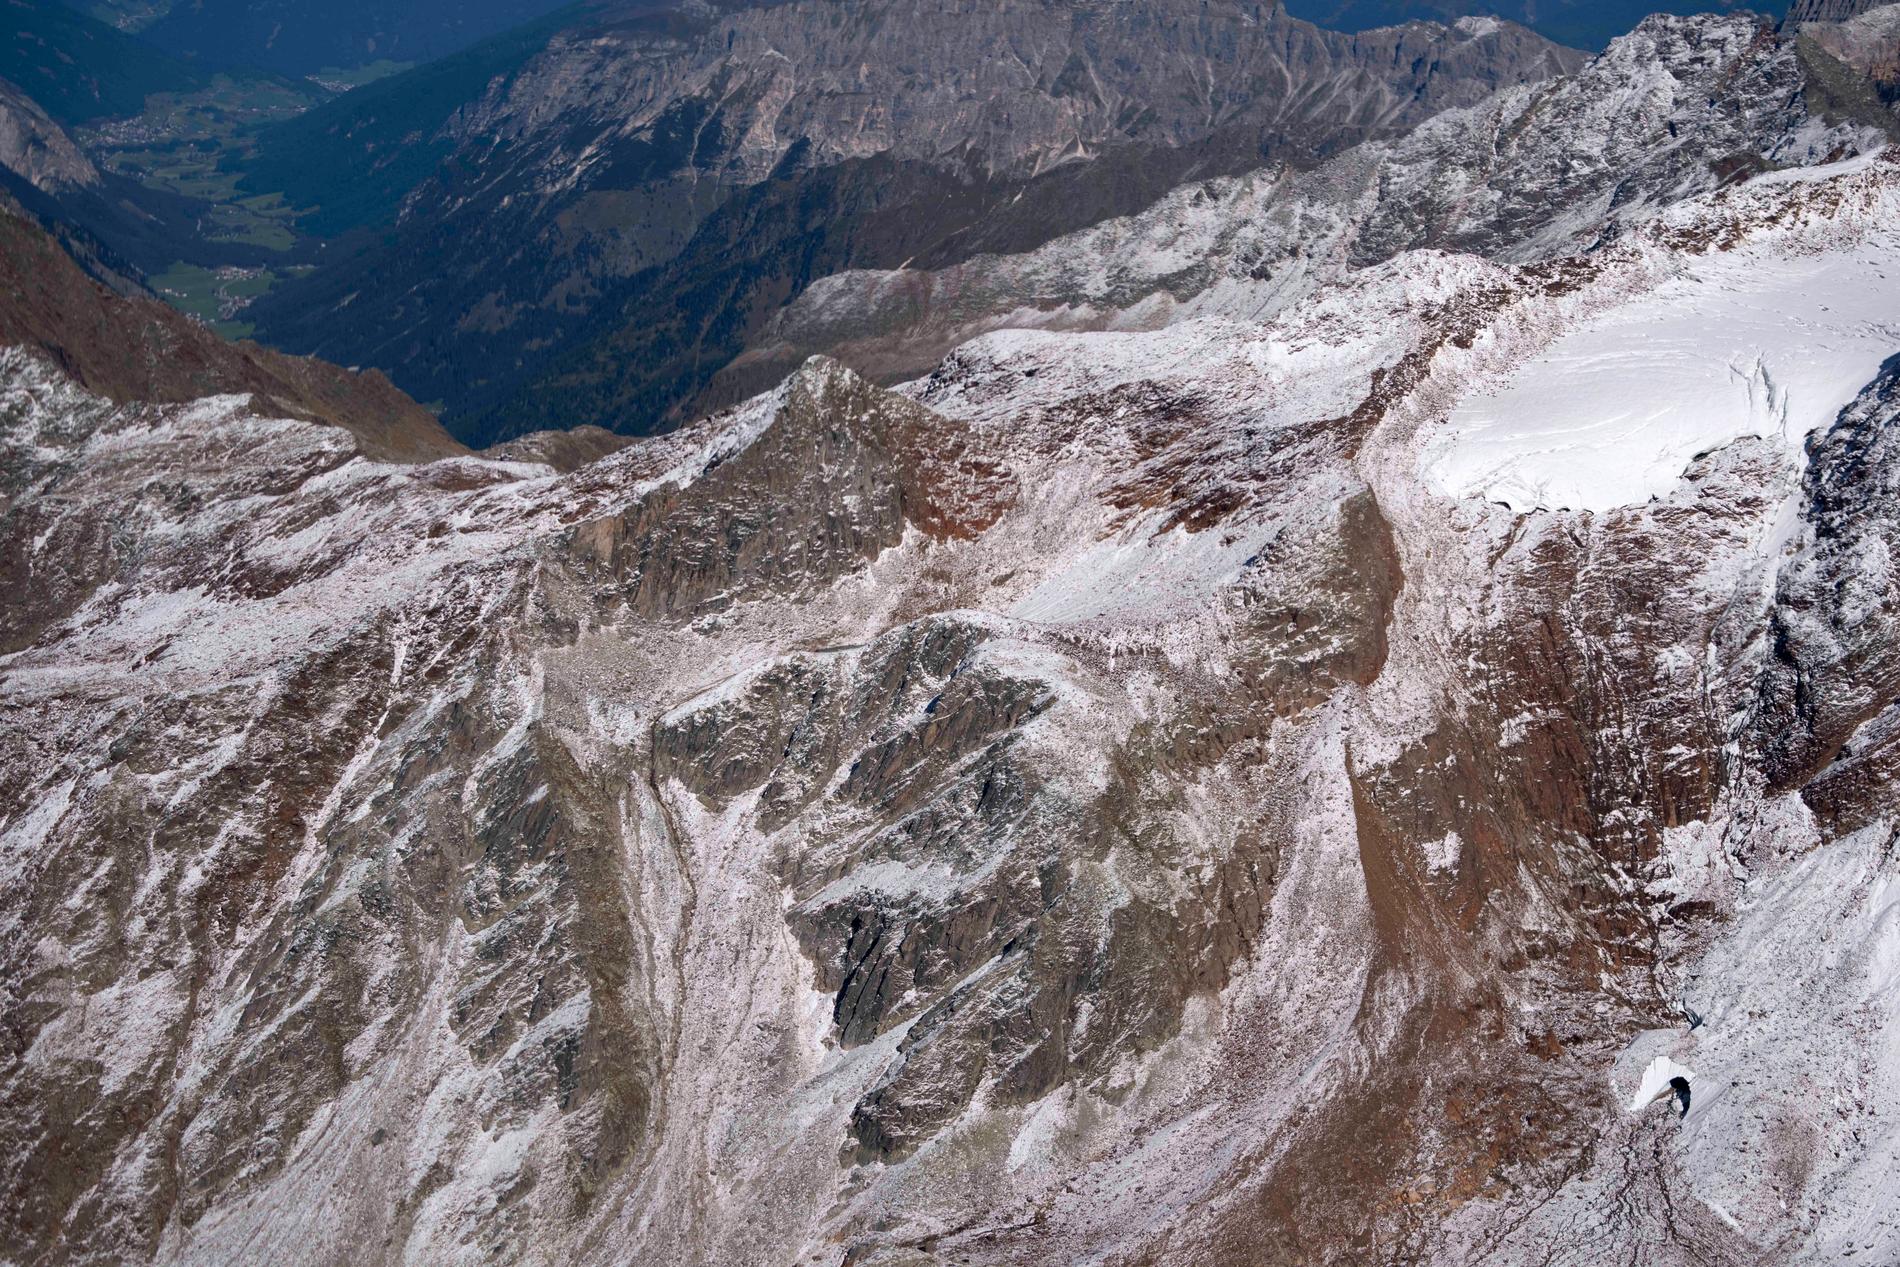 Freigerfernerglaciären på Gamsspitzl nära Innsbruck i Österrike. Här har glaciären delats i två delar som båda är ihåliga, vilket tyder på att varm luft kan strömma genom botten av glaciären, det kommer slut att att leda till en kollaps av snötäcket.